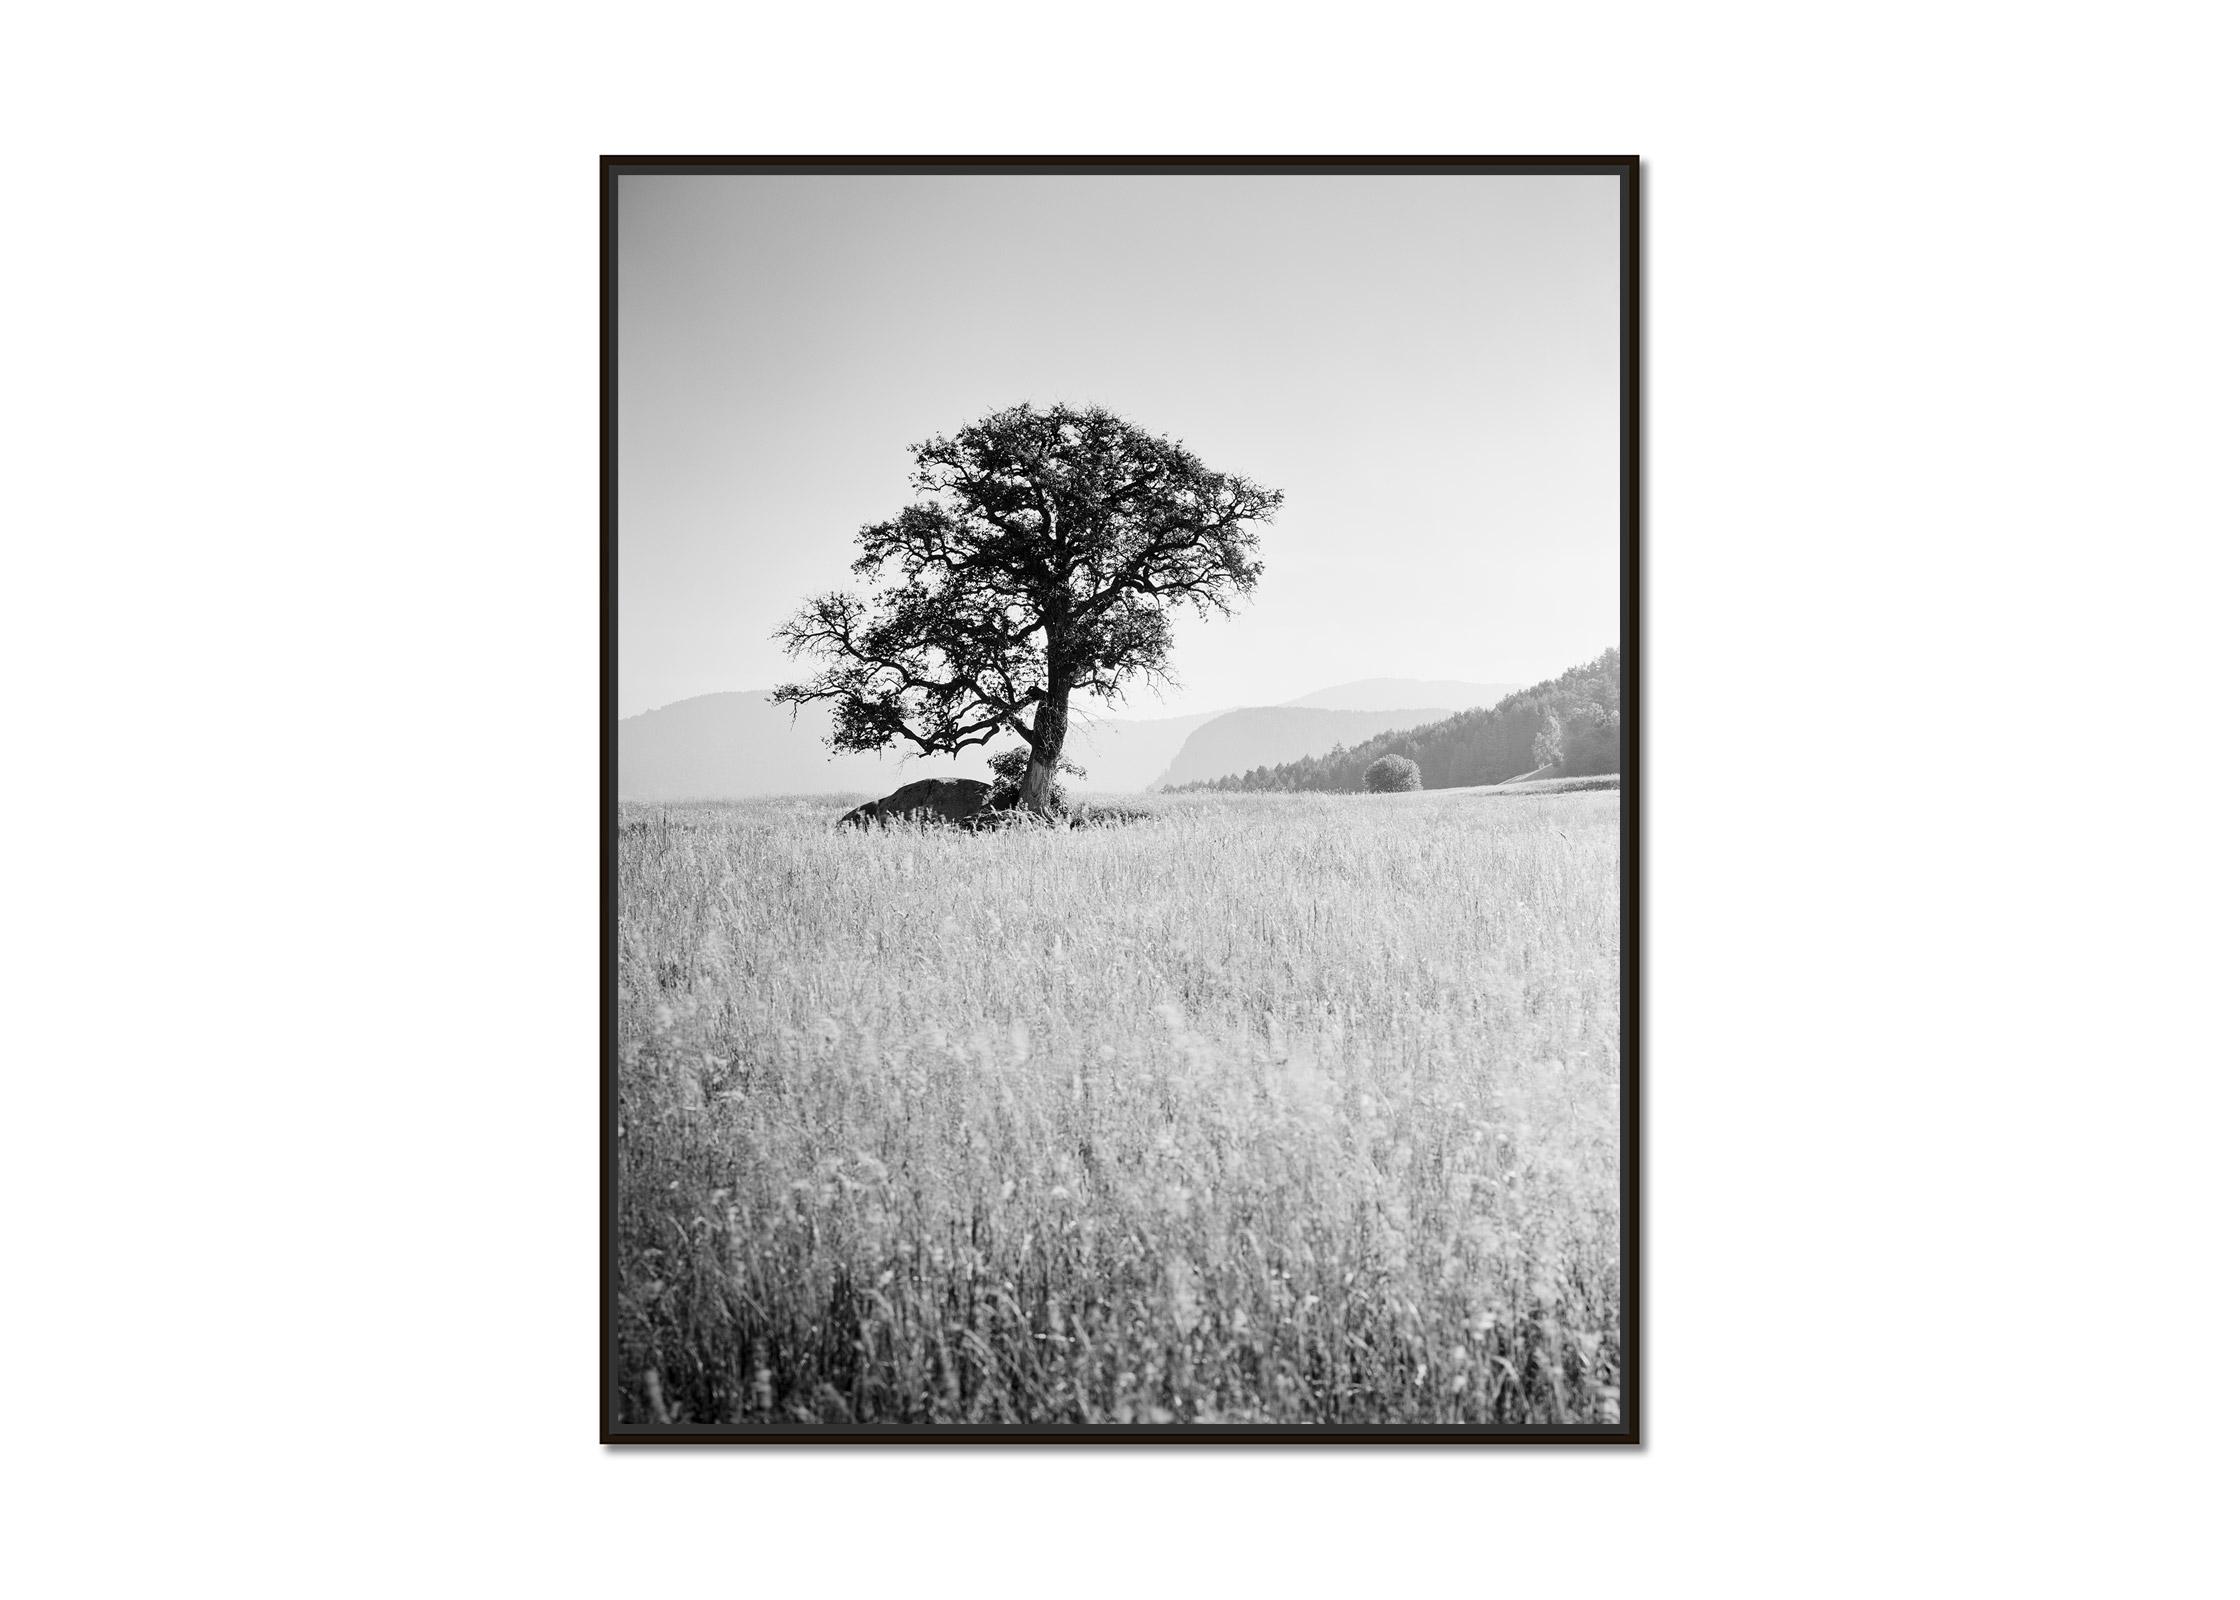 Morning Sun, ein einzelner Baum, Seiser Alm, Schwarz-Weiß-Landschaft, Kunstfotografie – Photograph von Gerald Berghammer